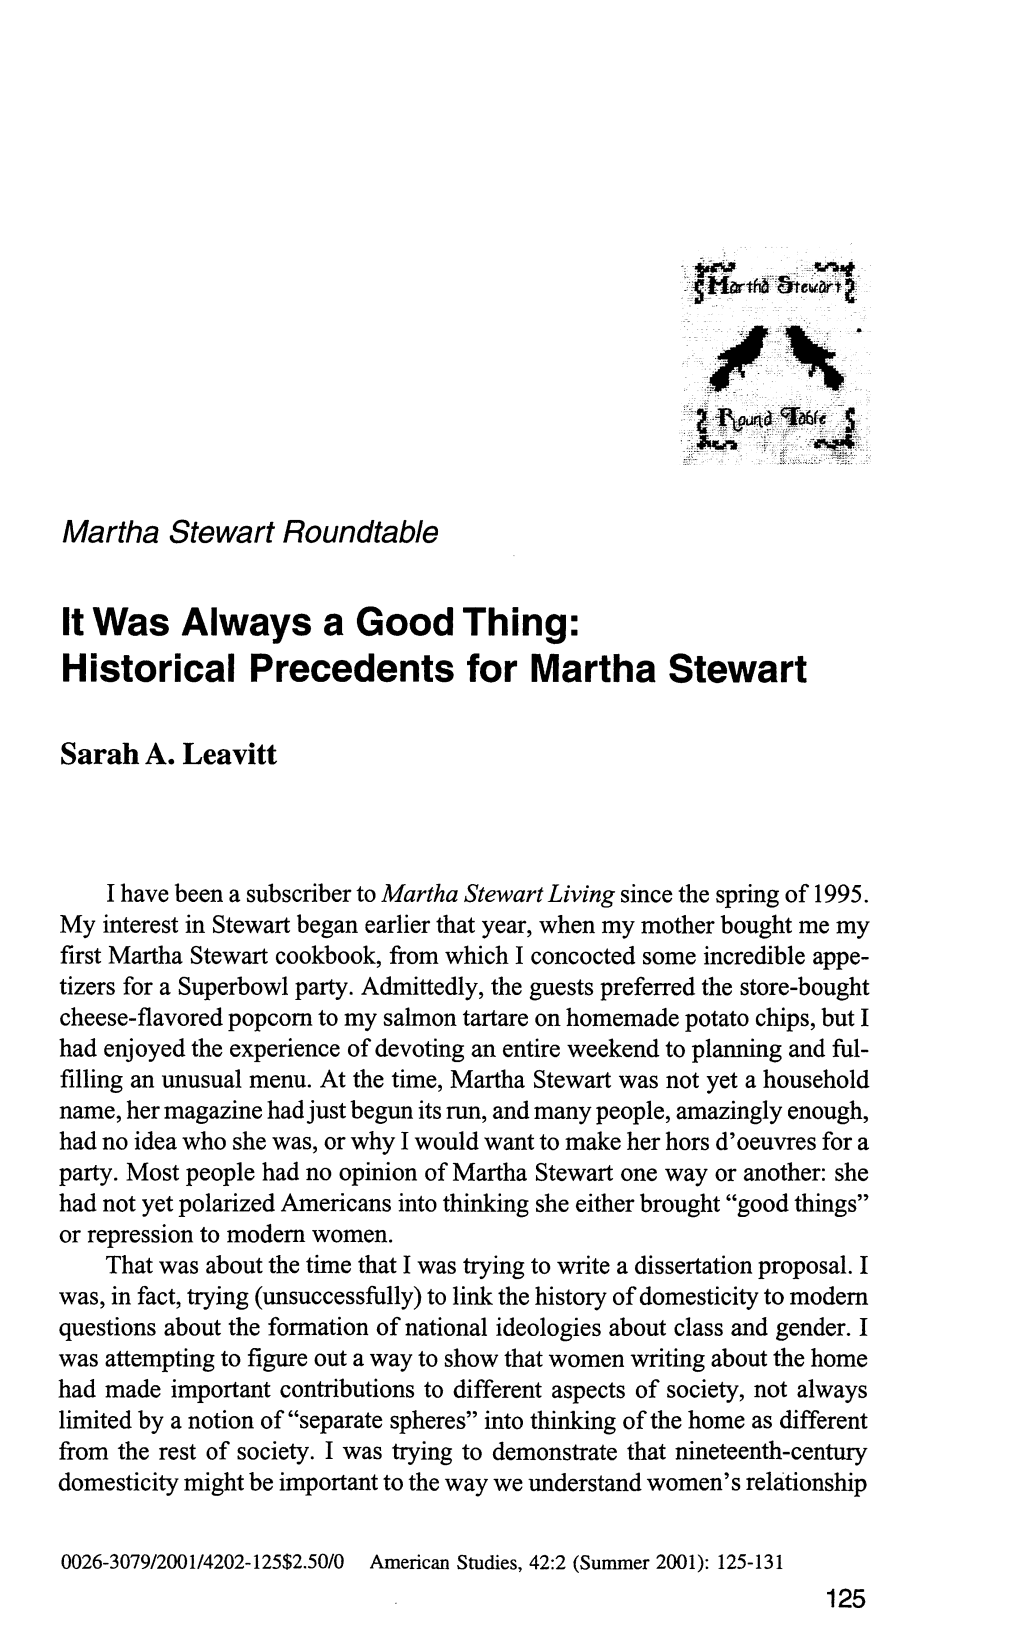 Historical Precedents for Martha Stewart